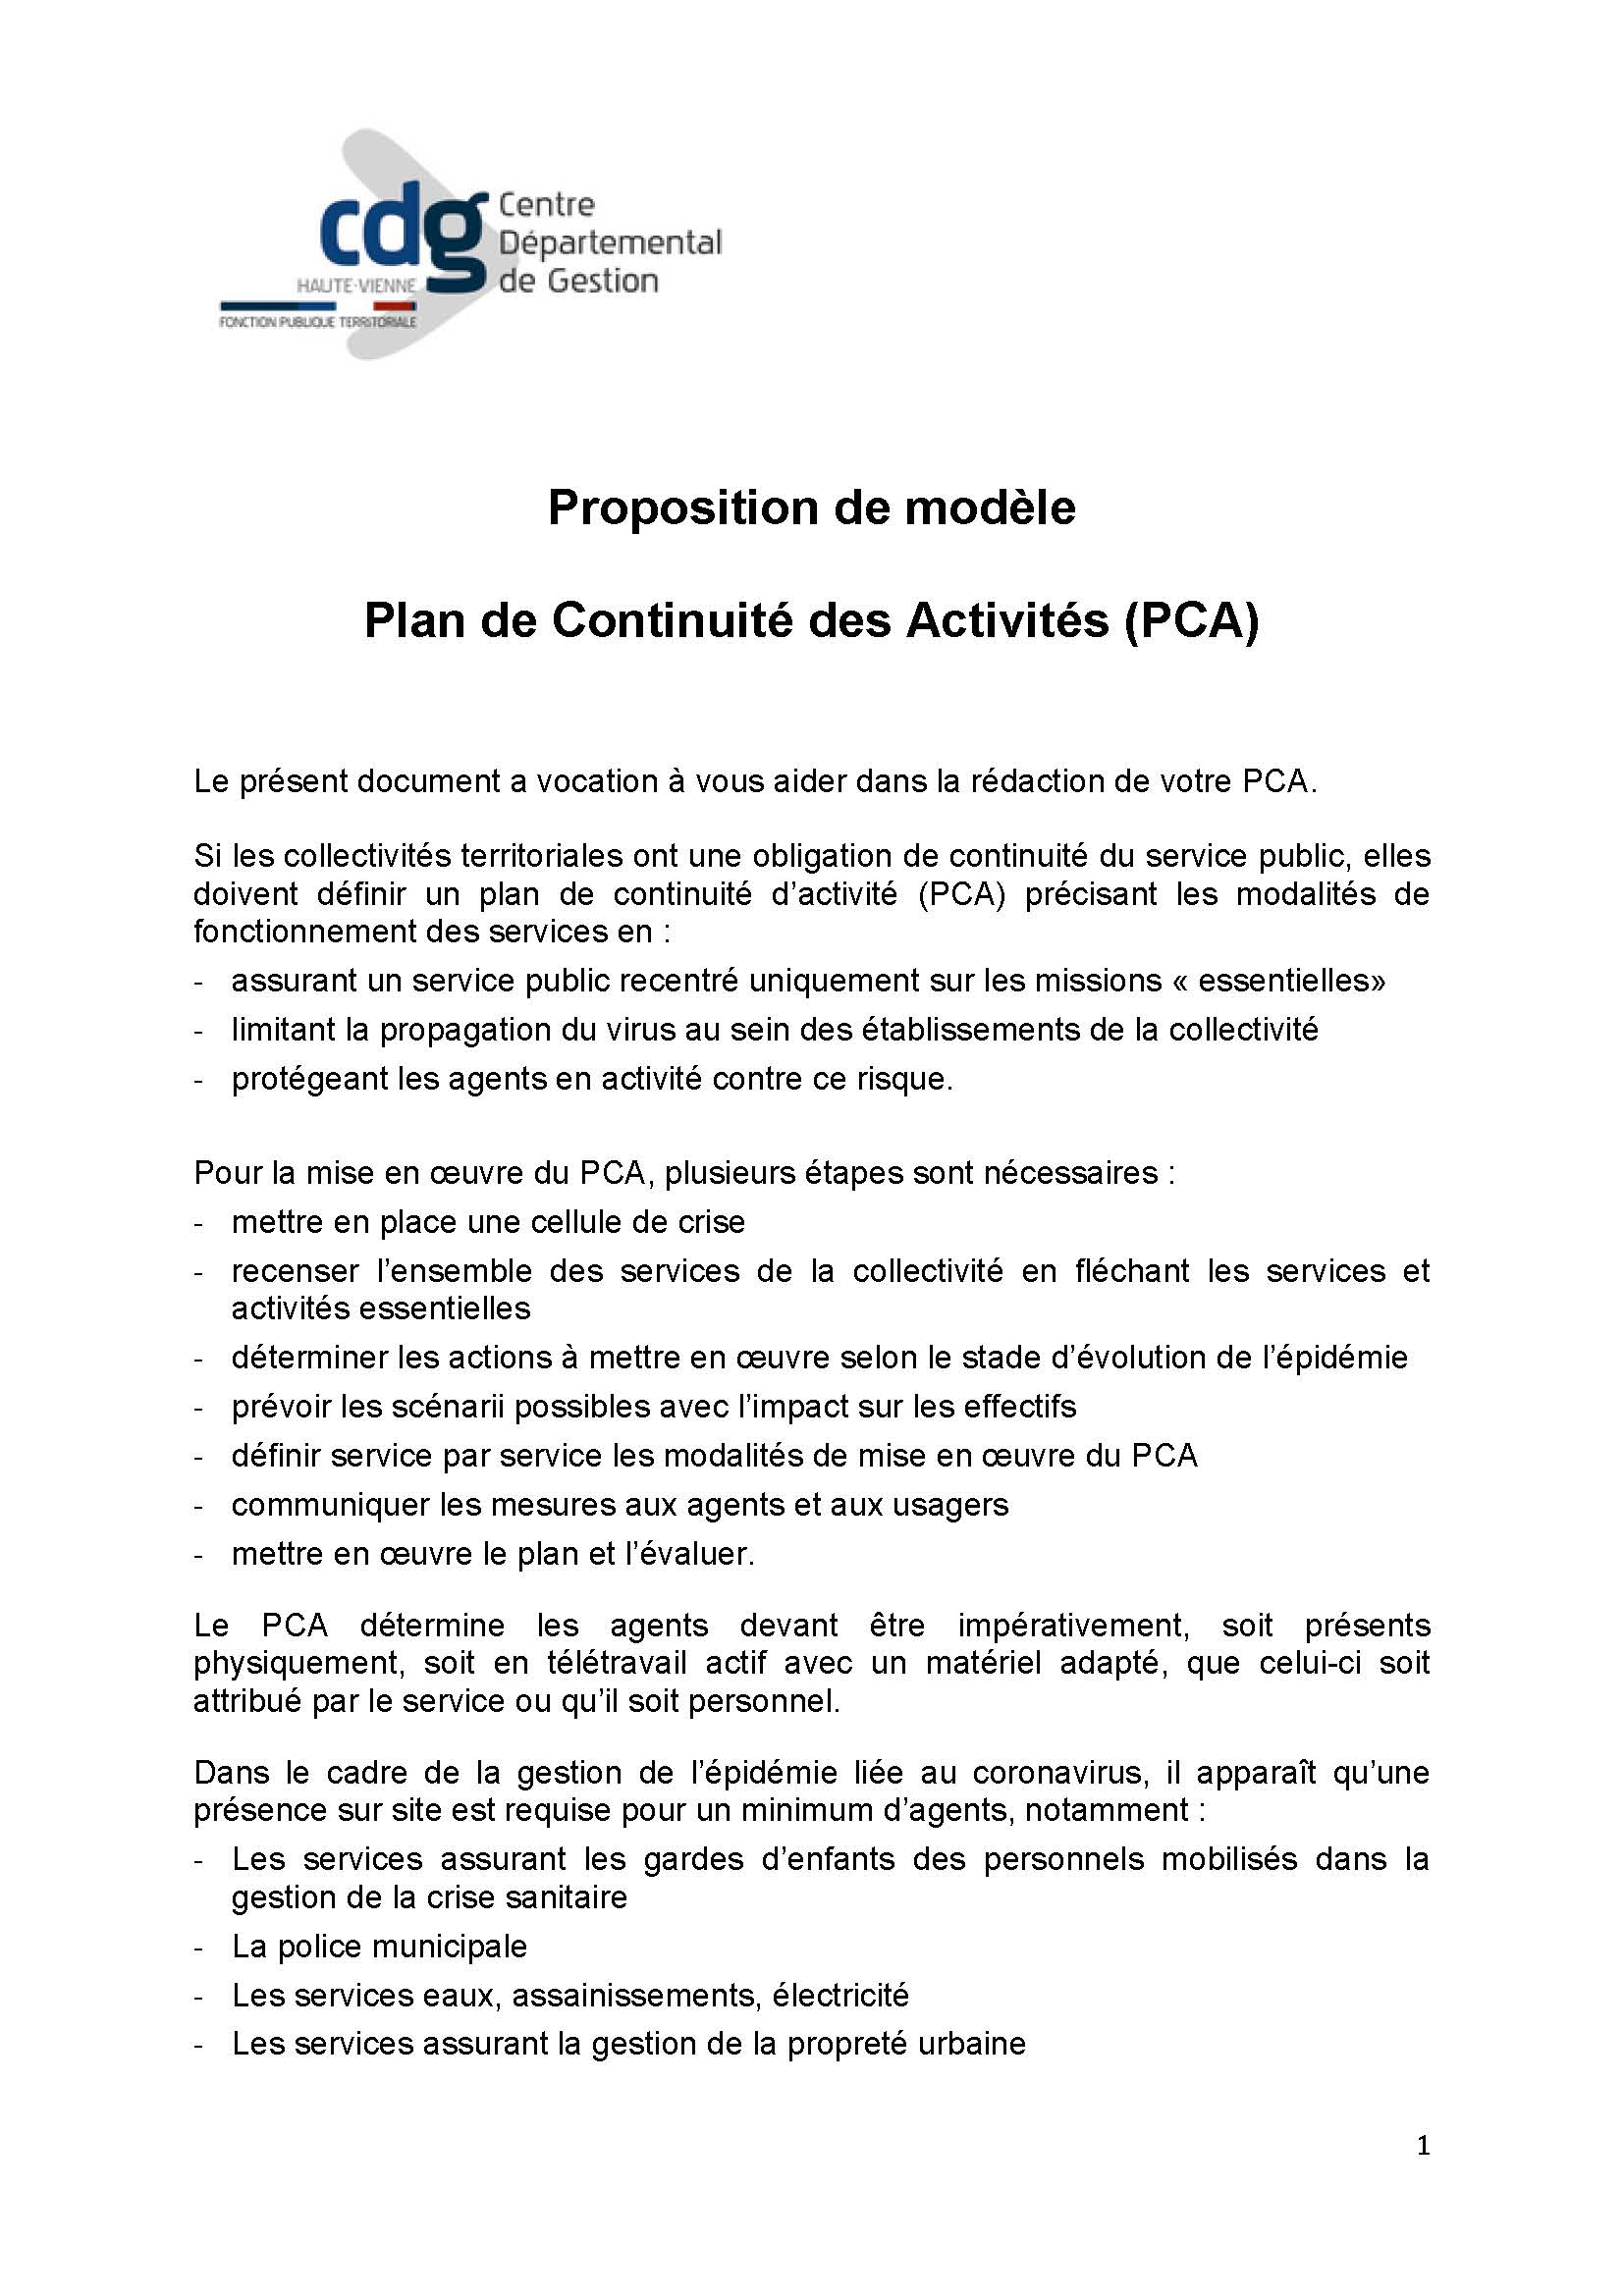 Le PCA plan  de  continuit  de  l activit  Mod le CDG87 